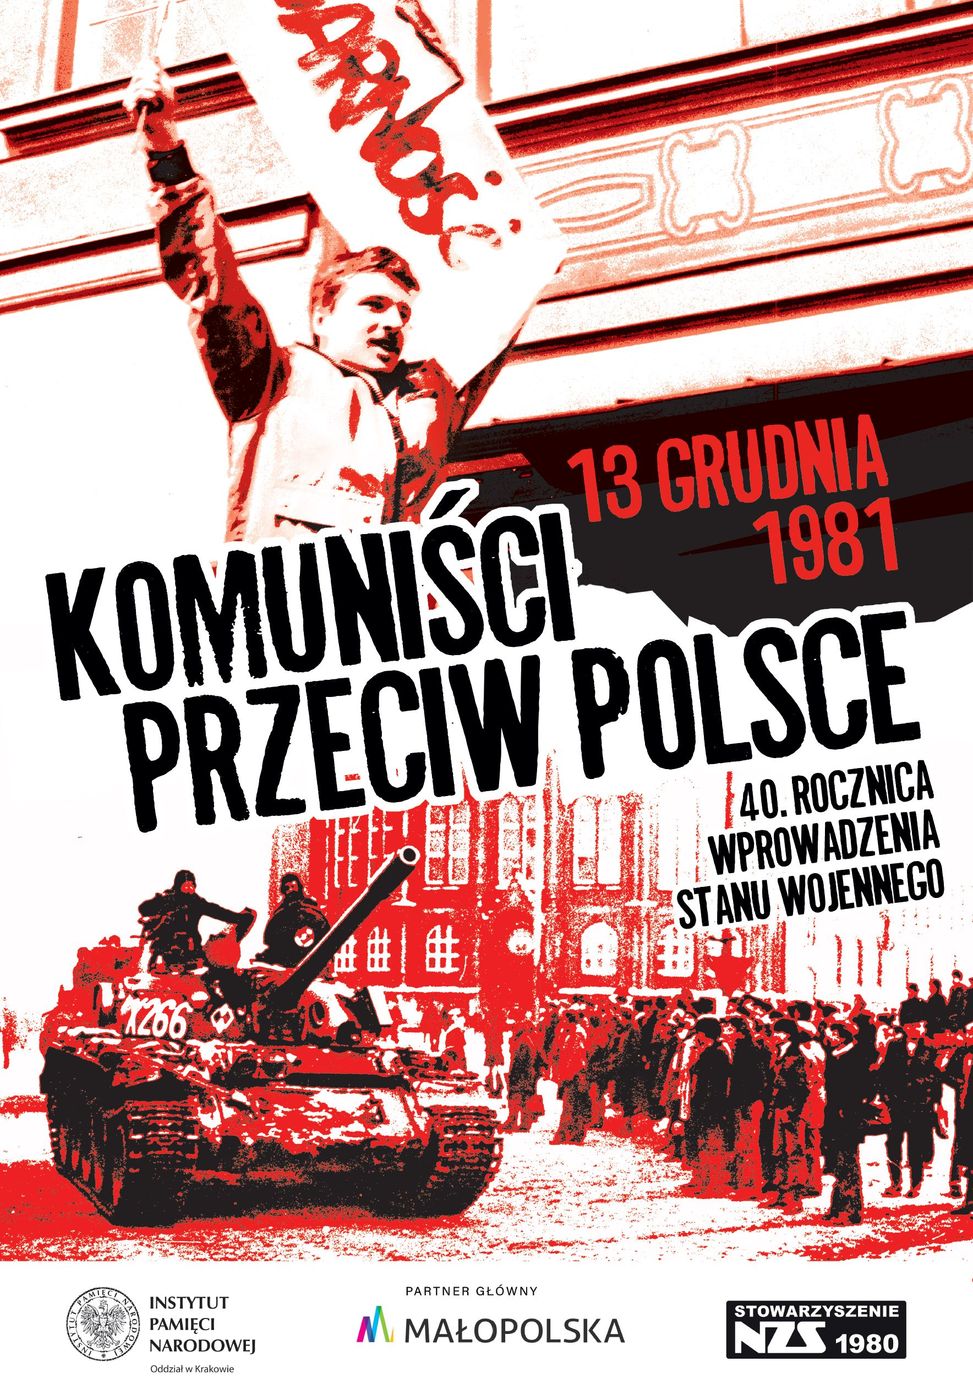 IPN Kraków - 40 rocznica wprowadzenia stanu wojennego